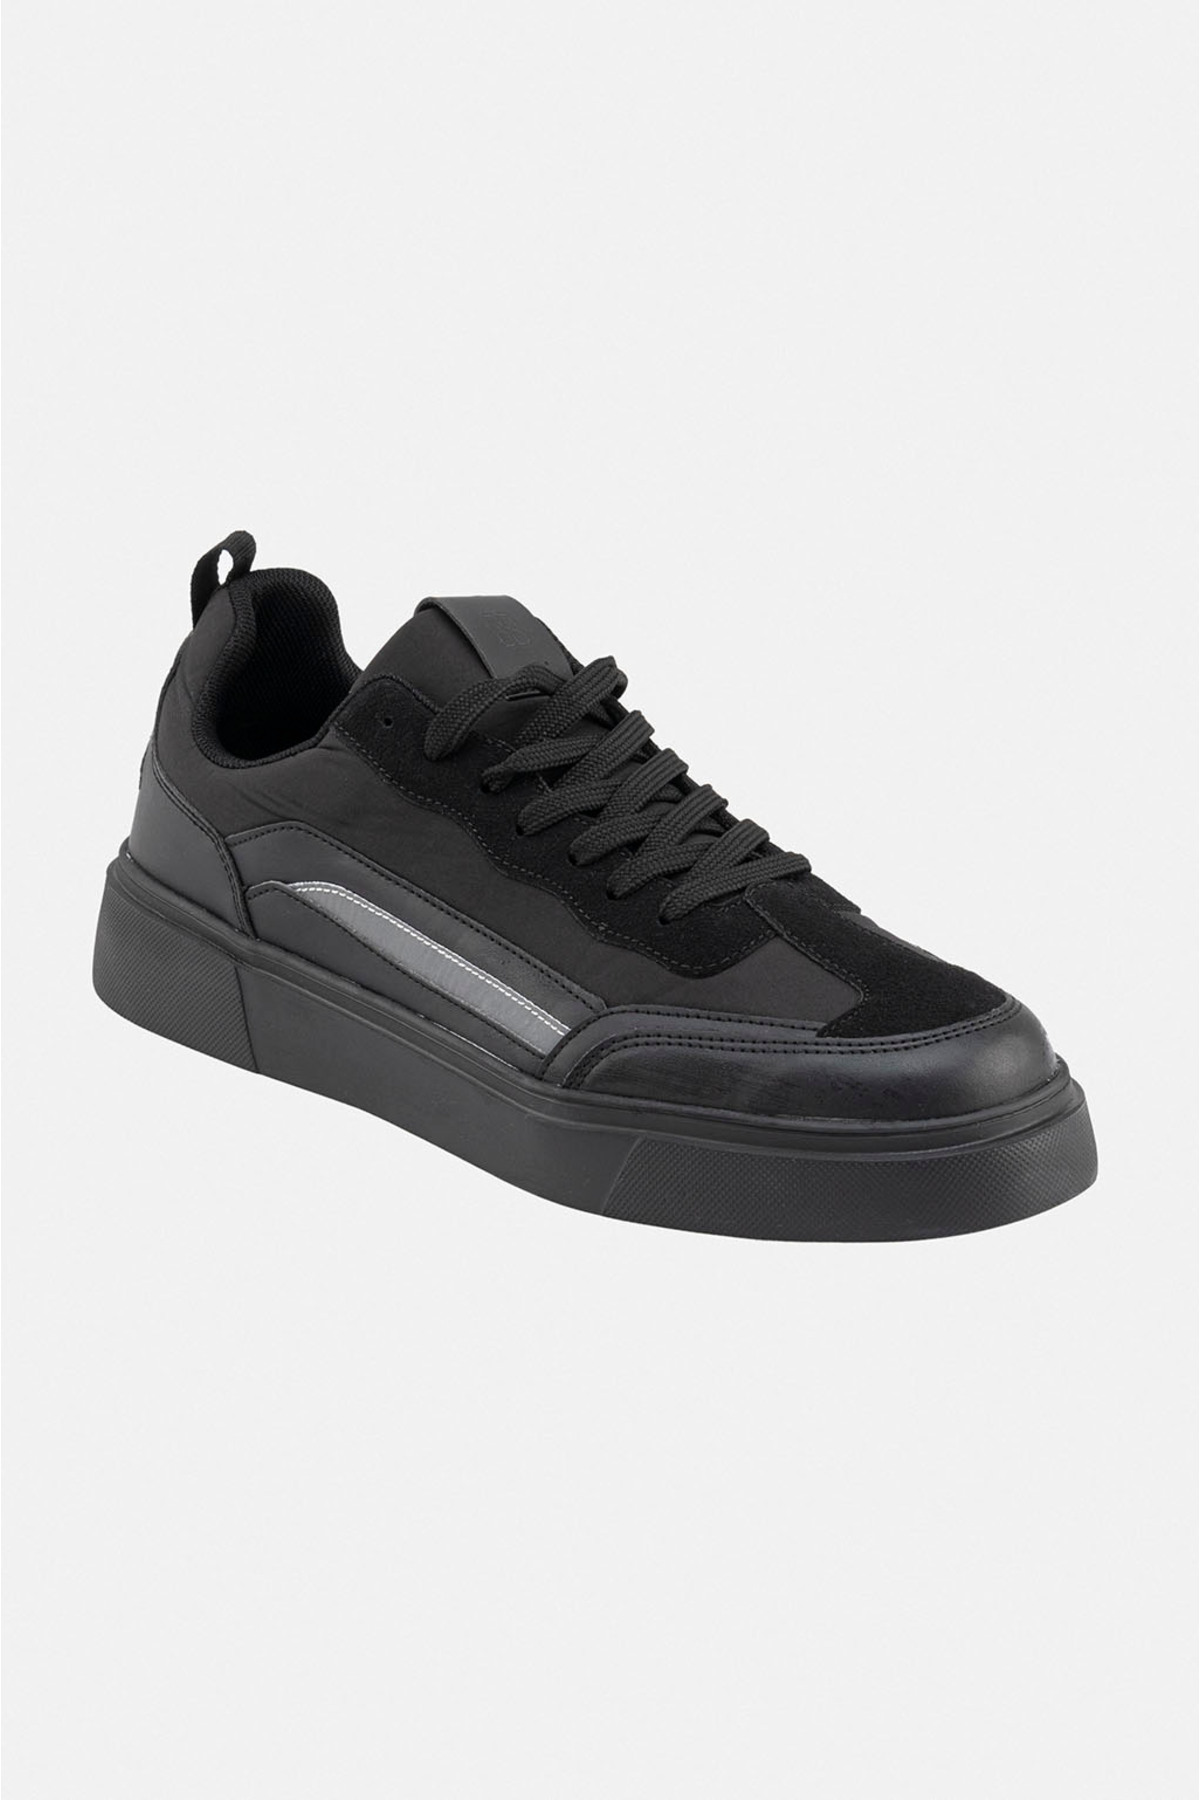 Avva Men's Black Reflective Flexible Sole Sneaker Shoes